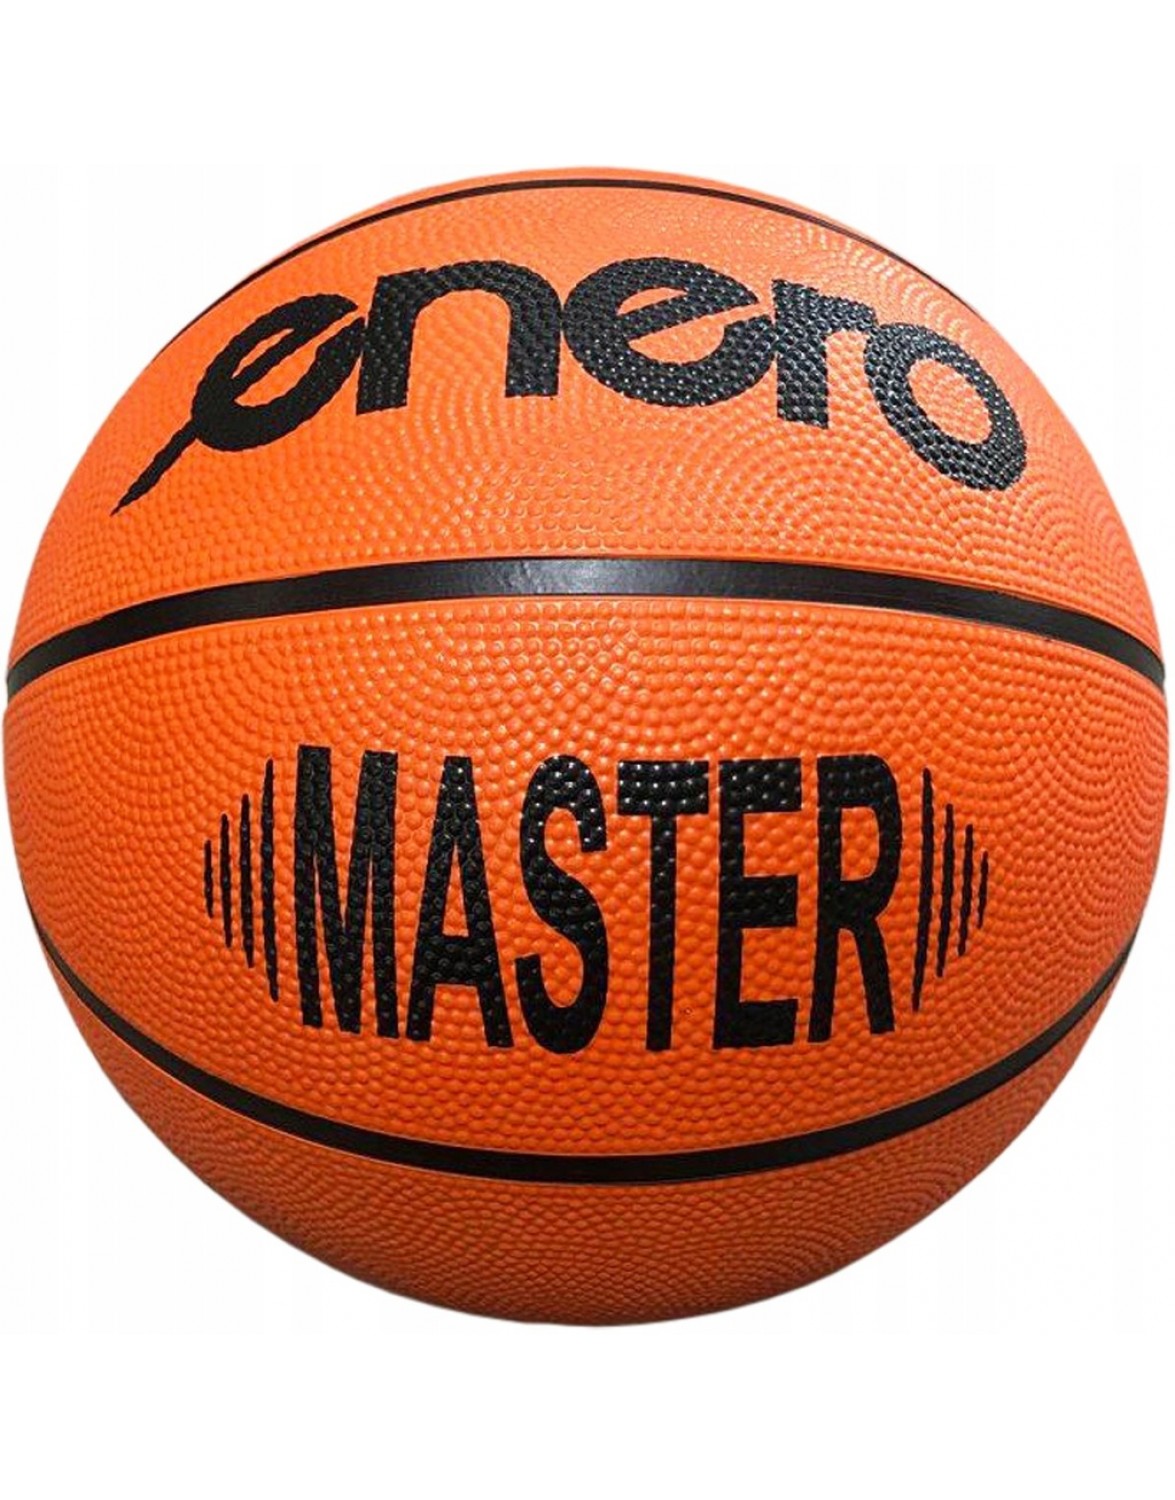 Баскетбольний м'яч Enero Master R. 5. ENERO MASTER 5 БАСКЕТБОЛЬНИЙ М'ЯЧ ДЛЯ ВІДПОЧИНКУ